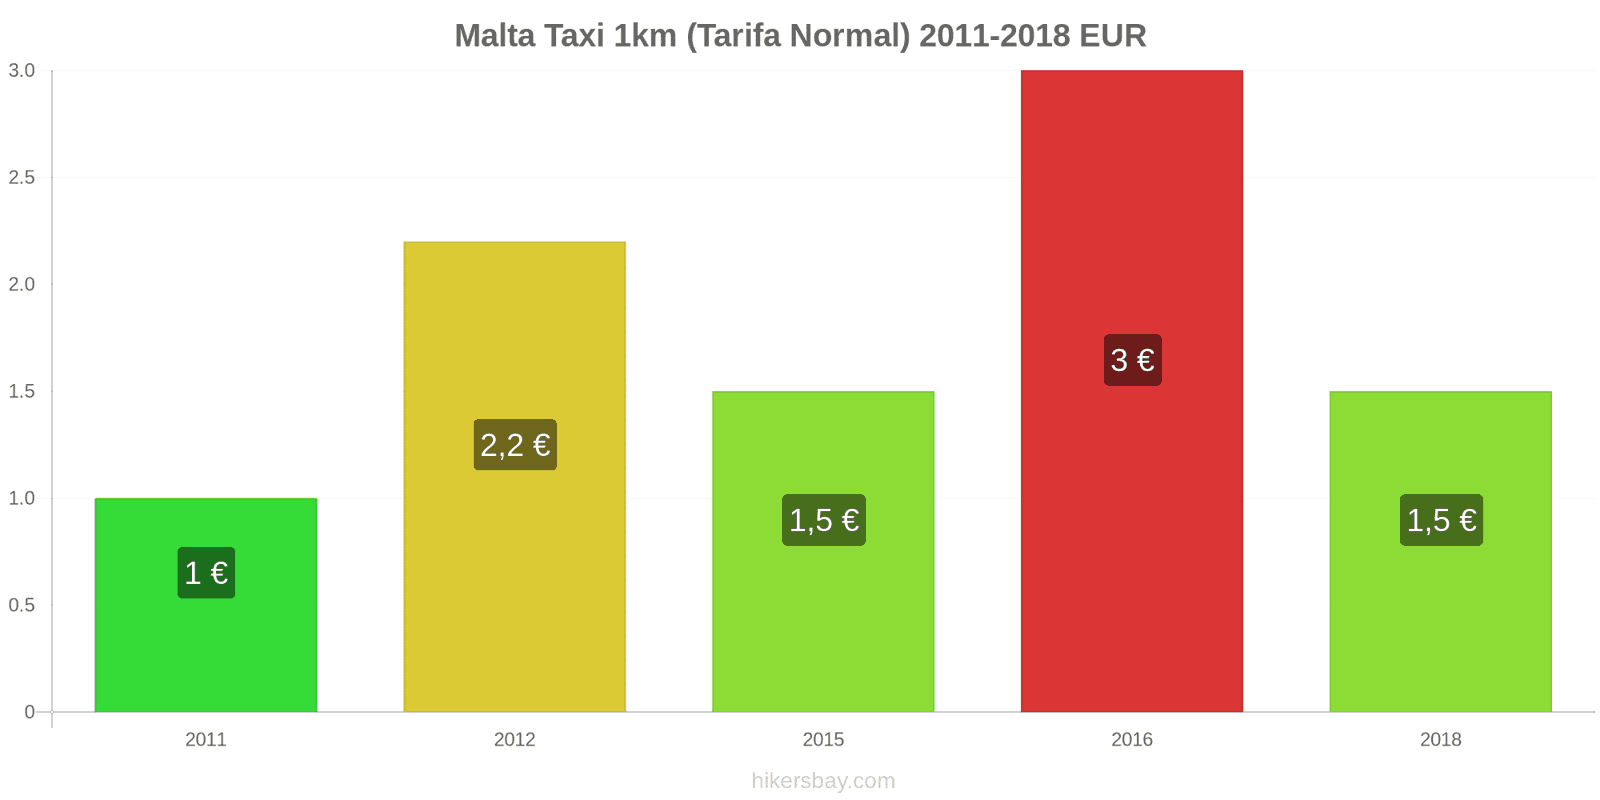 Malta cambios de precios Taxi 1km (tarifa normal) hikersbay.com